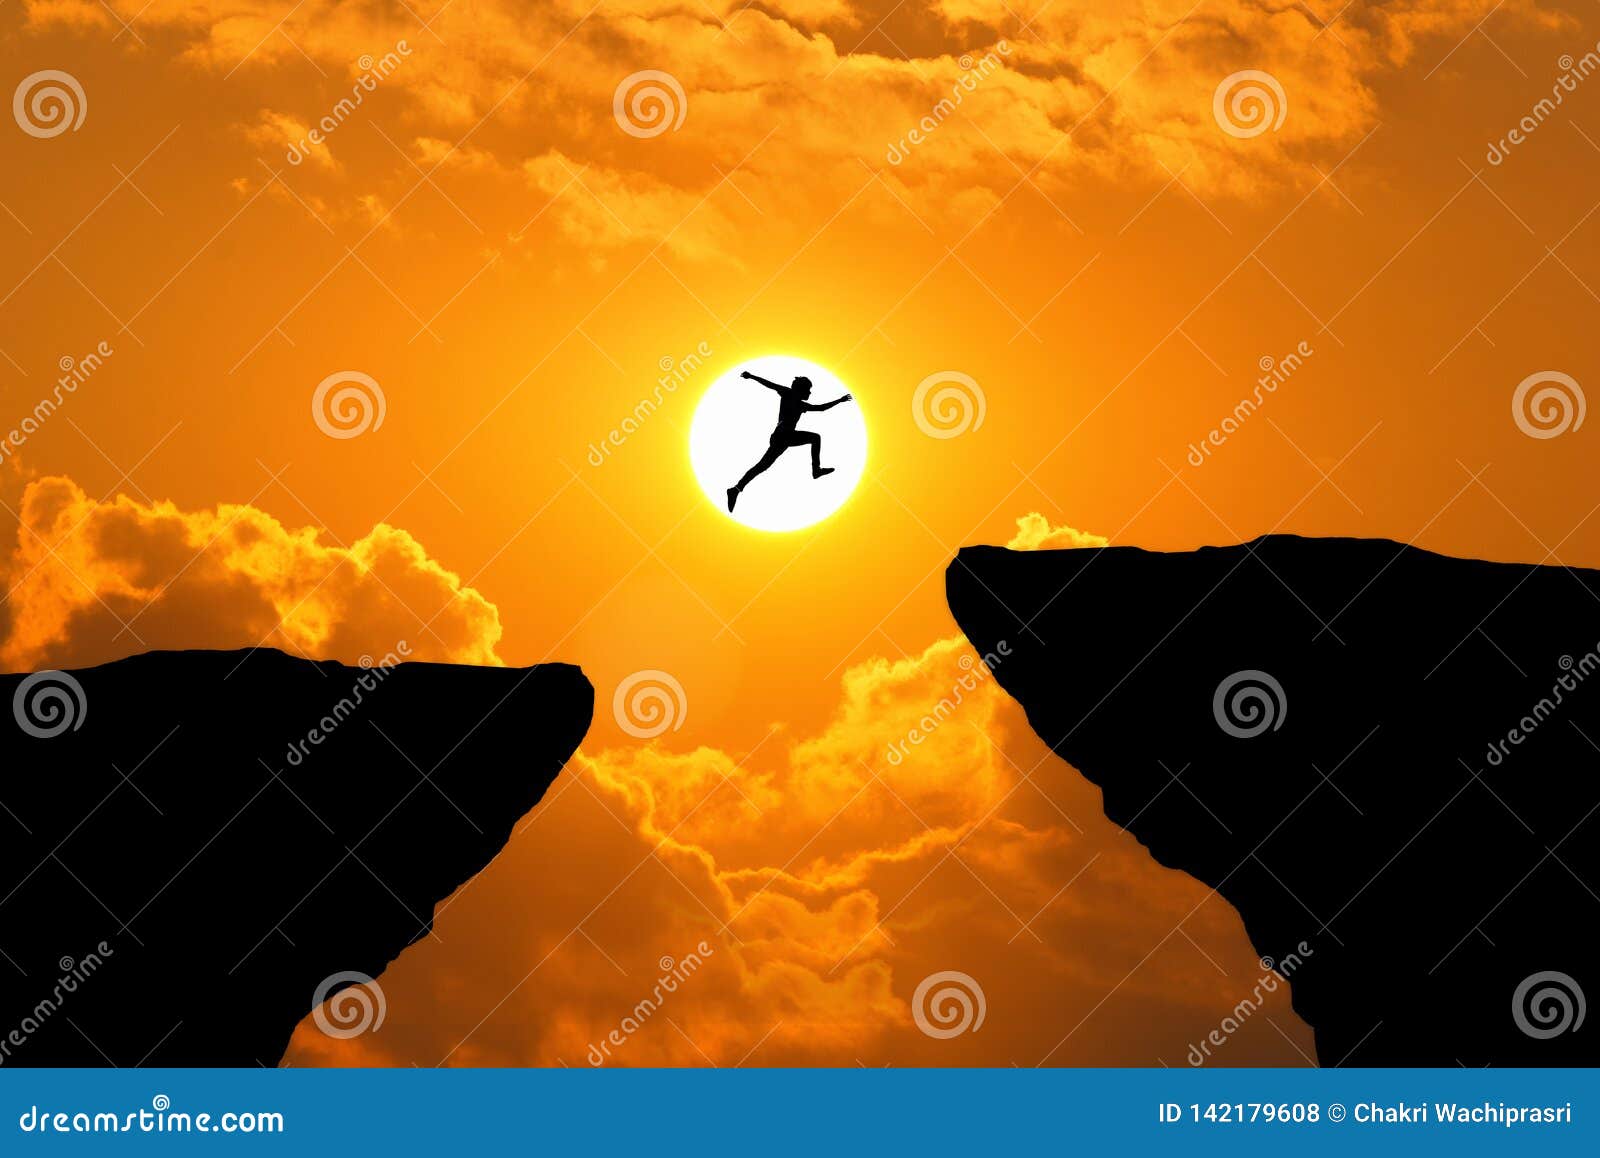 man jump through the gap between hill.man jumping over cliff